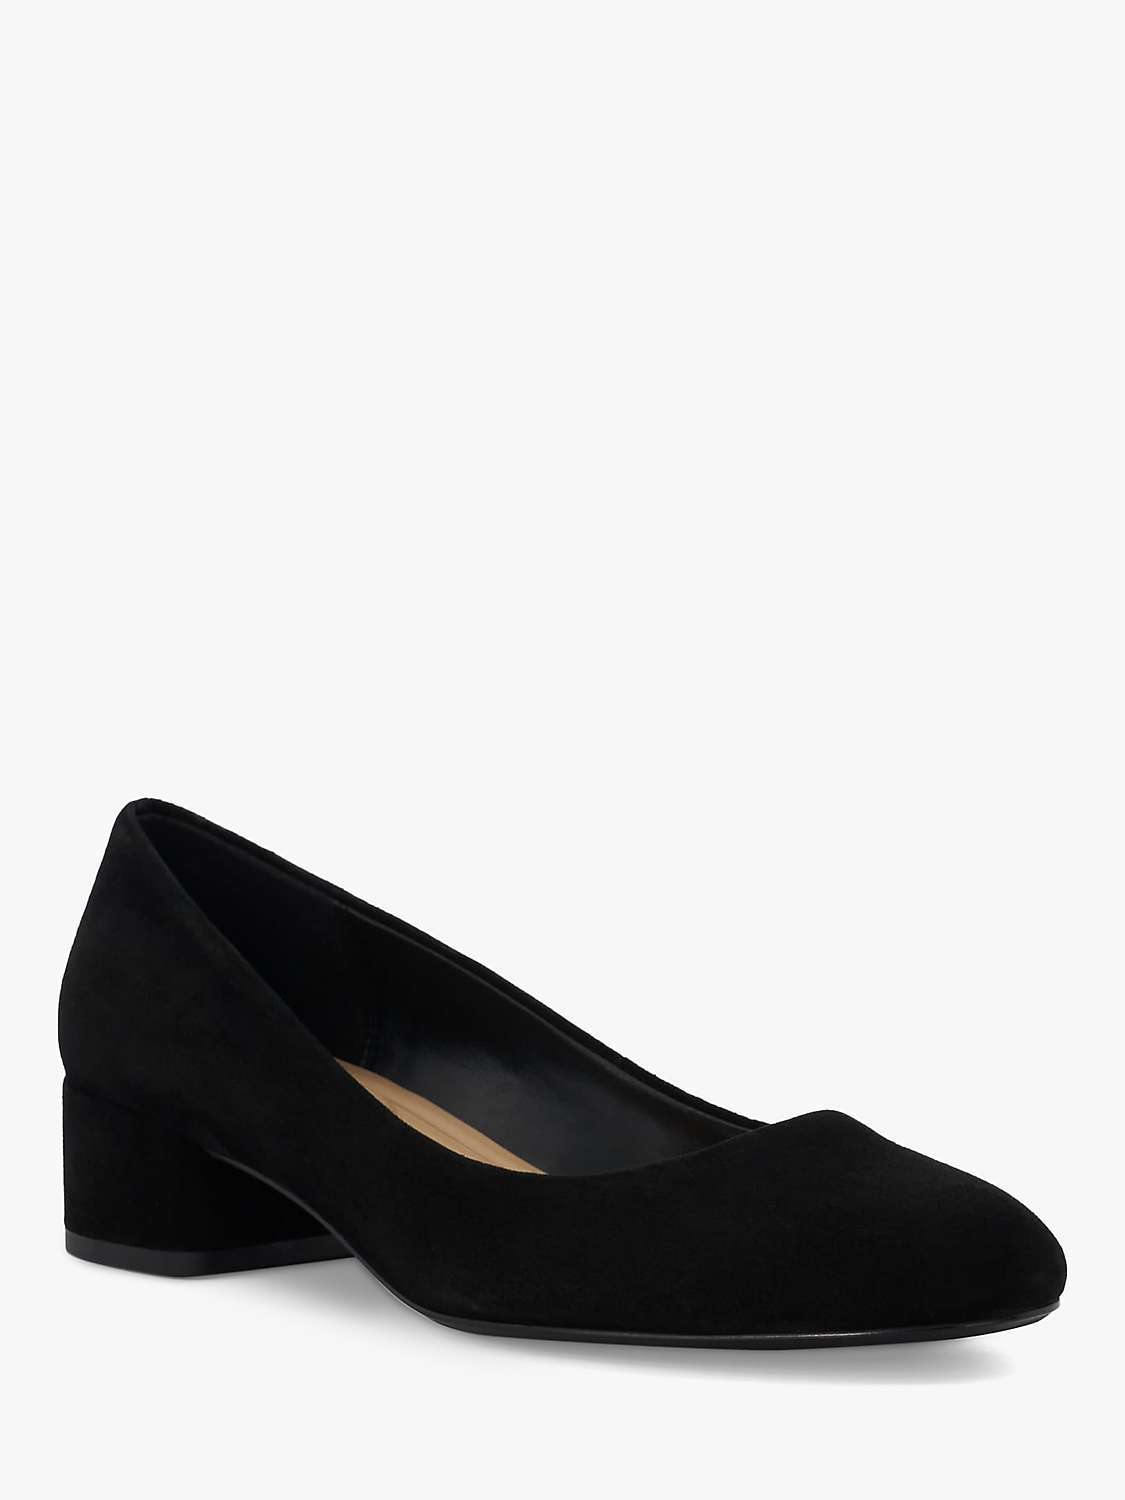 Buy Dune Bracket Block Heel Suede Court Shoes, Black Online at johnlewis.com